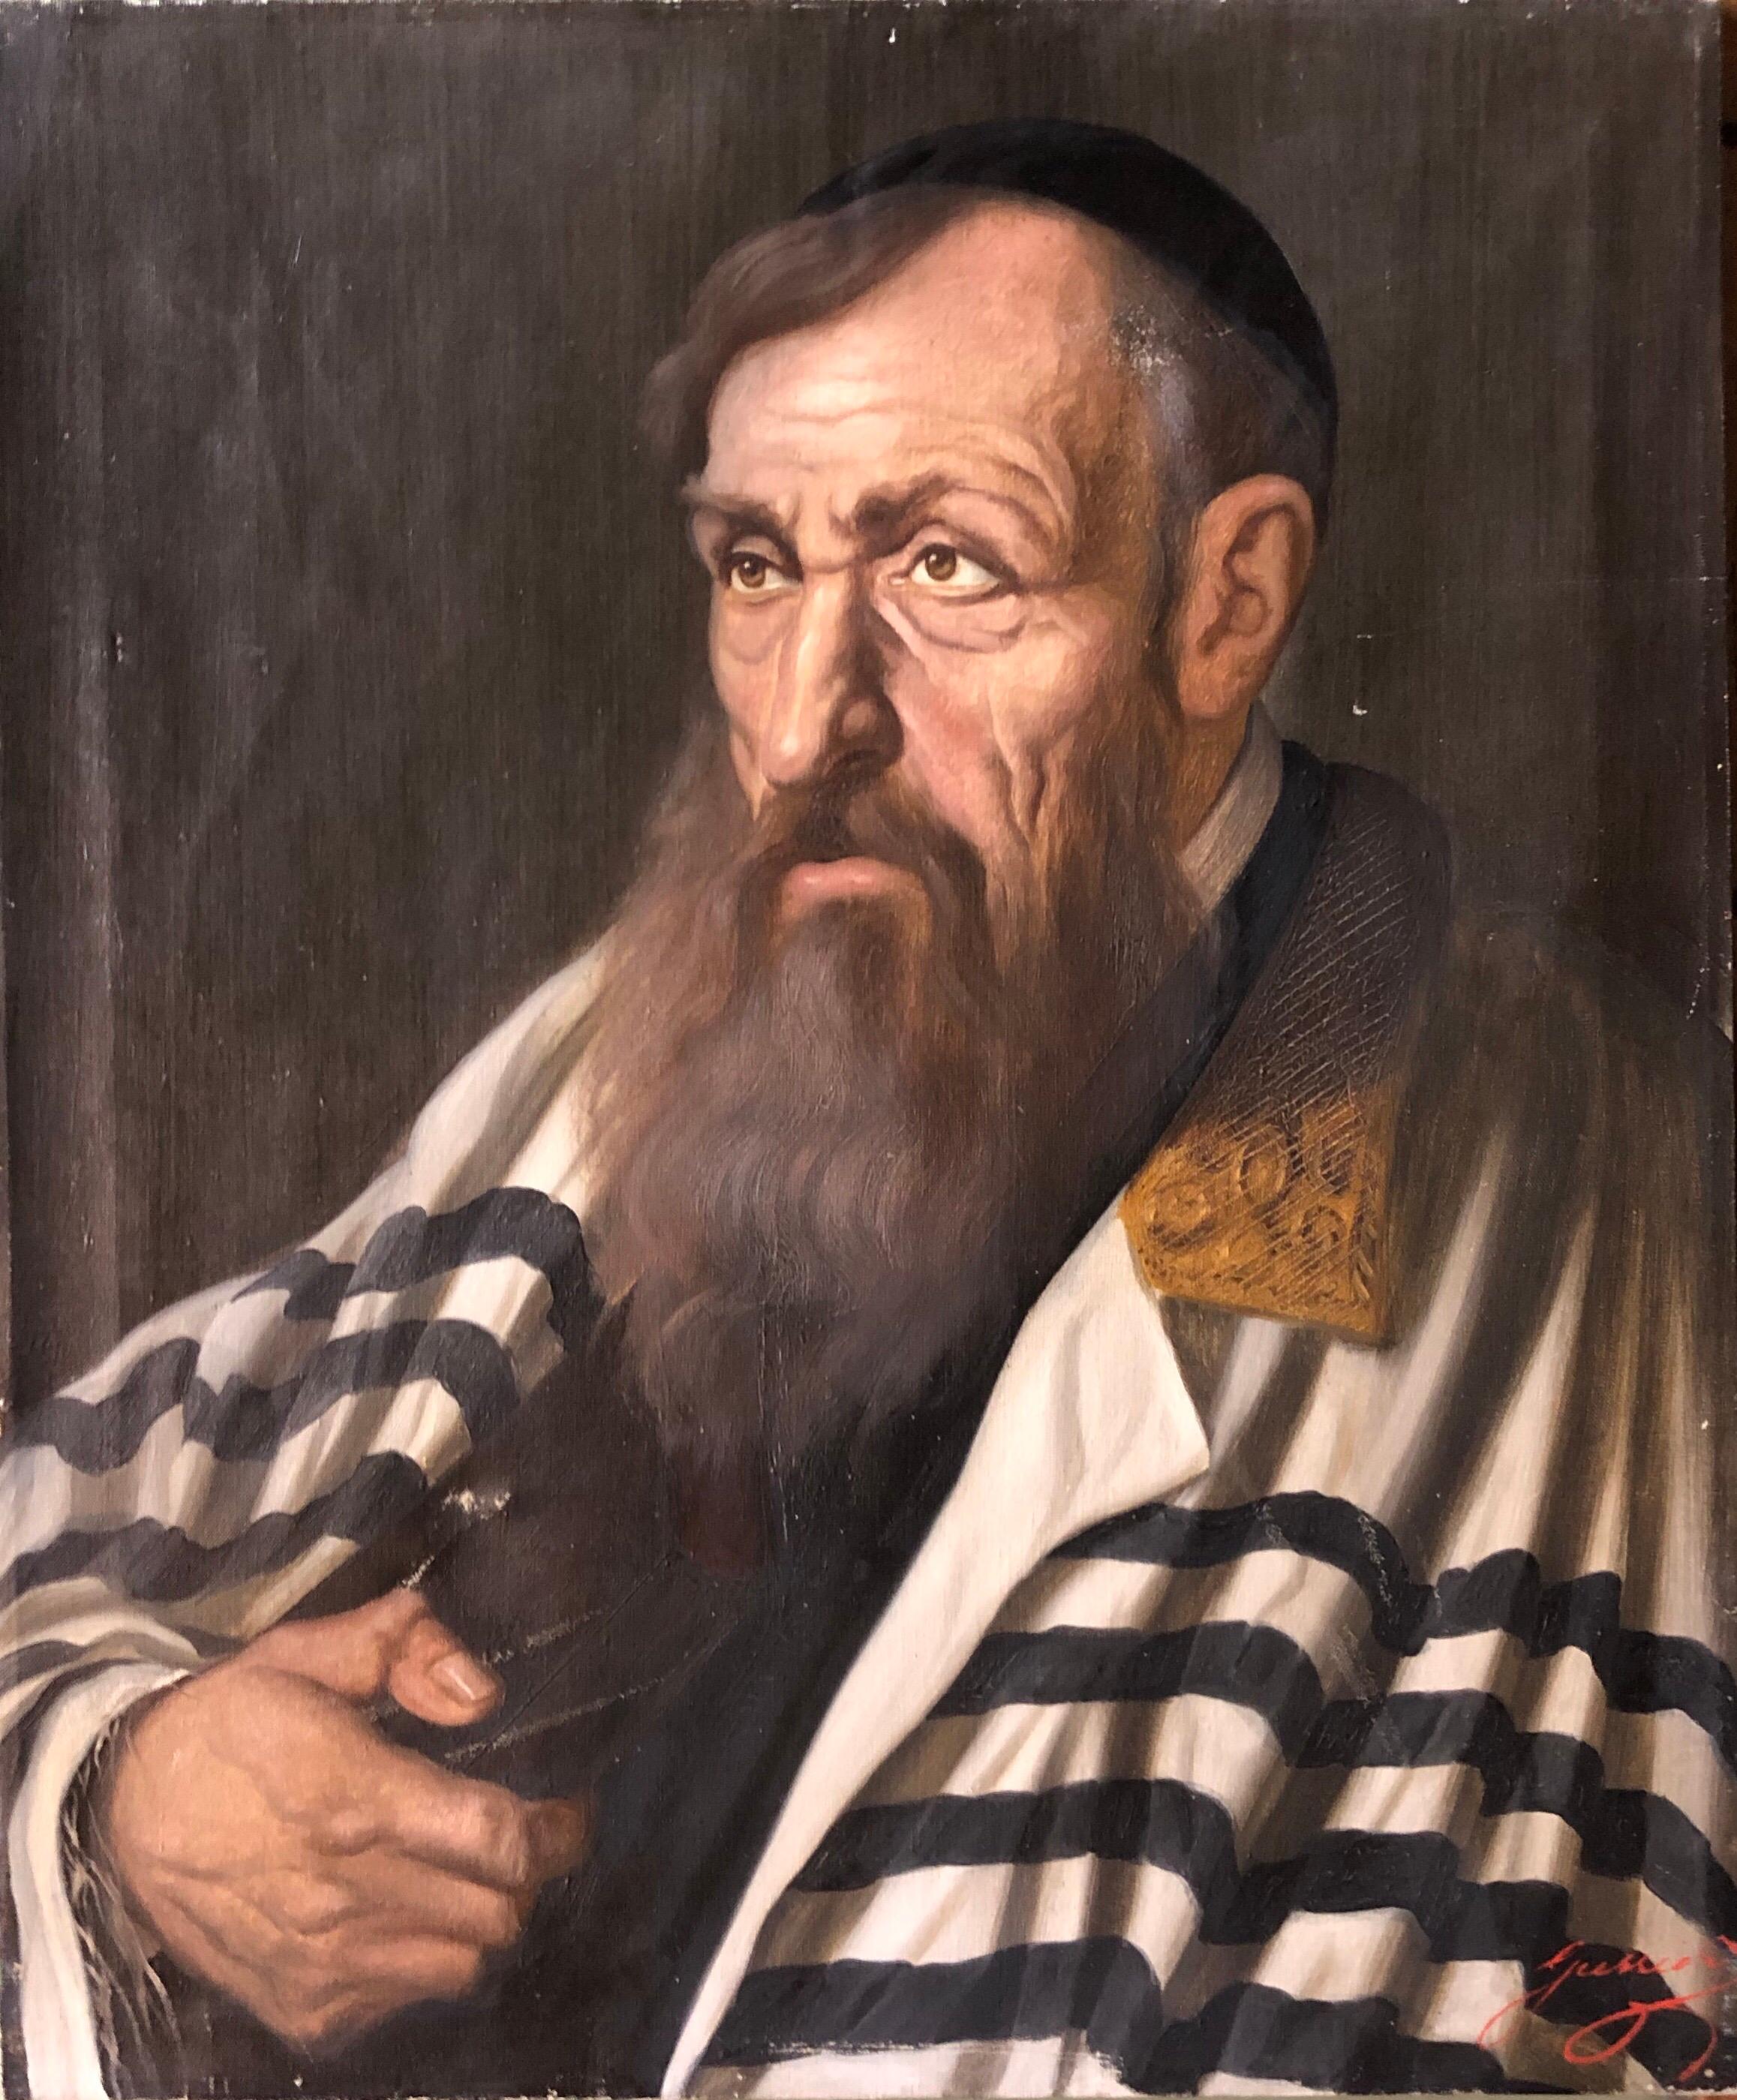 Polnisches Judaica-Porträt eines israelischen Rabbiners aus Judaica mit hoher Synagoge, Ölgemälde – Painting von Unknown